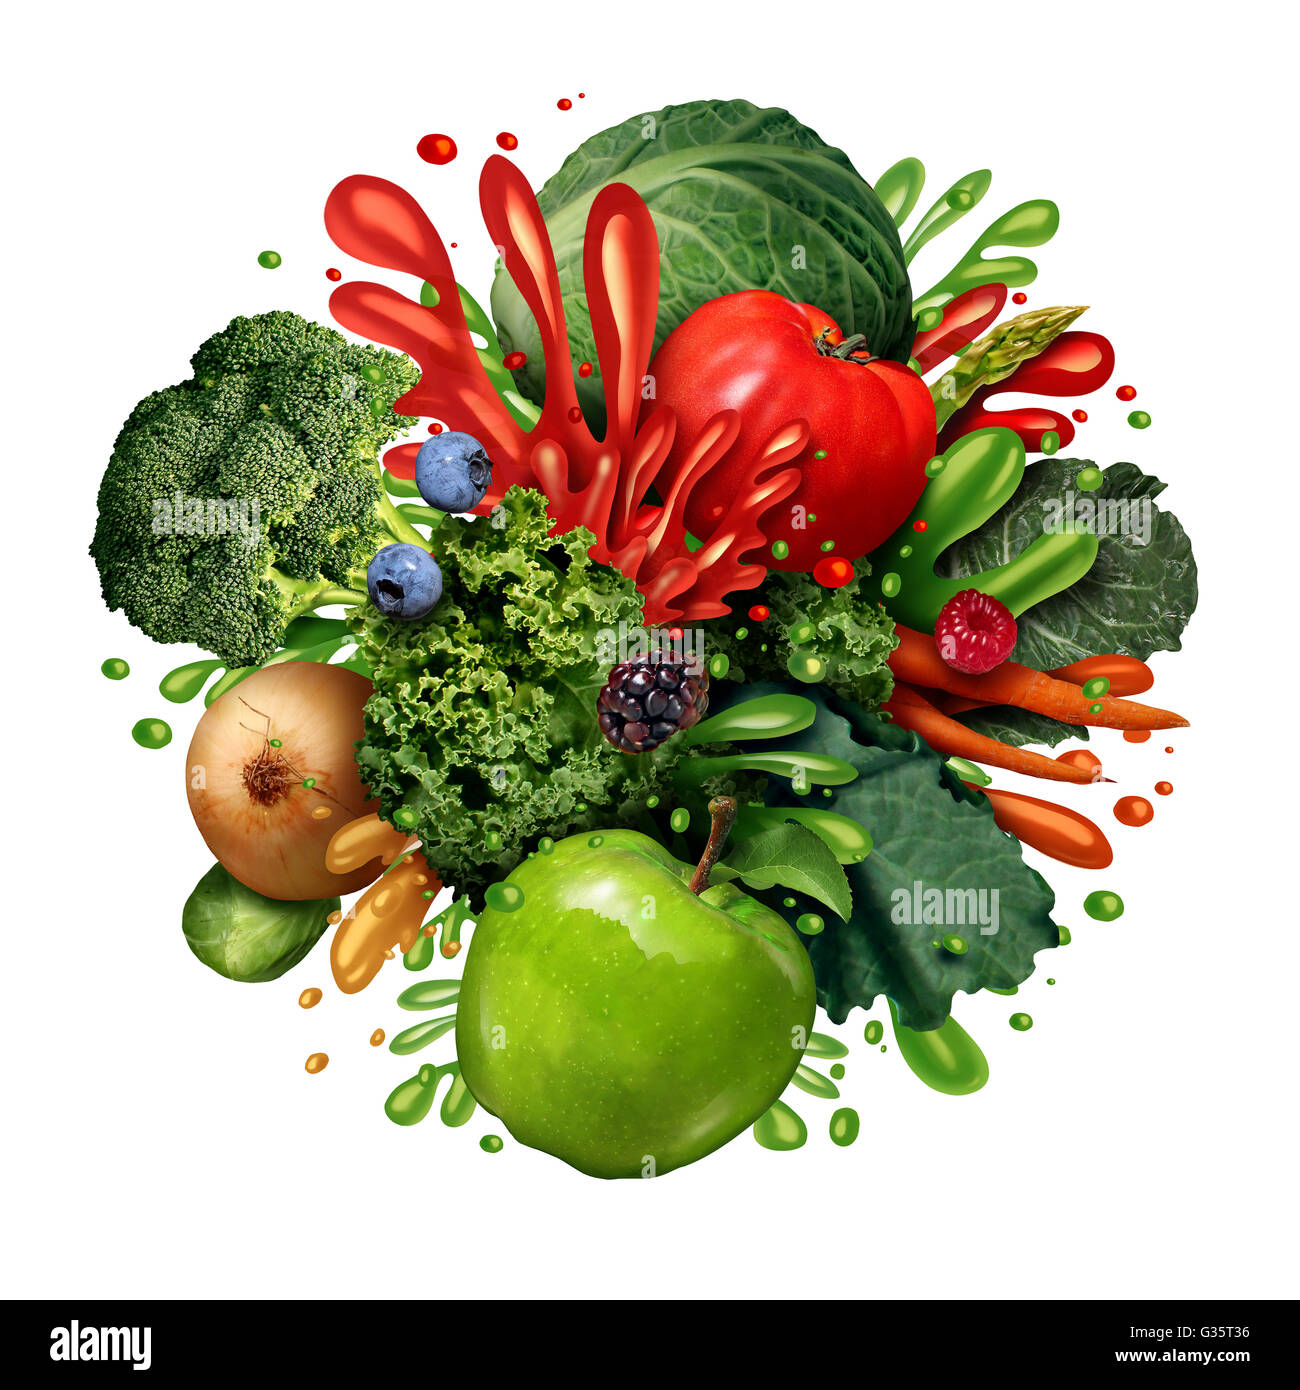 Gemüse Obst Saft Spritzen als eine Gruppe von frischem Obst und Gemüse mit flüssigen Tropfen Spritzwasser als gesunde Smoothie oder Gesundheit Getränk Konzept isoliert auf einem weißen Hintergrund in einer Foto-realistische Darstellung. Stockfoto